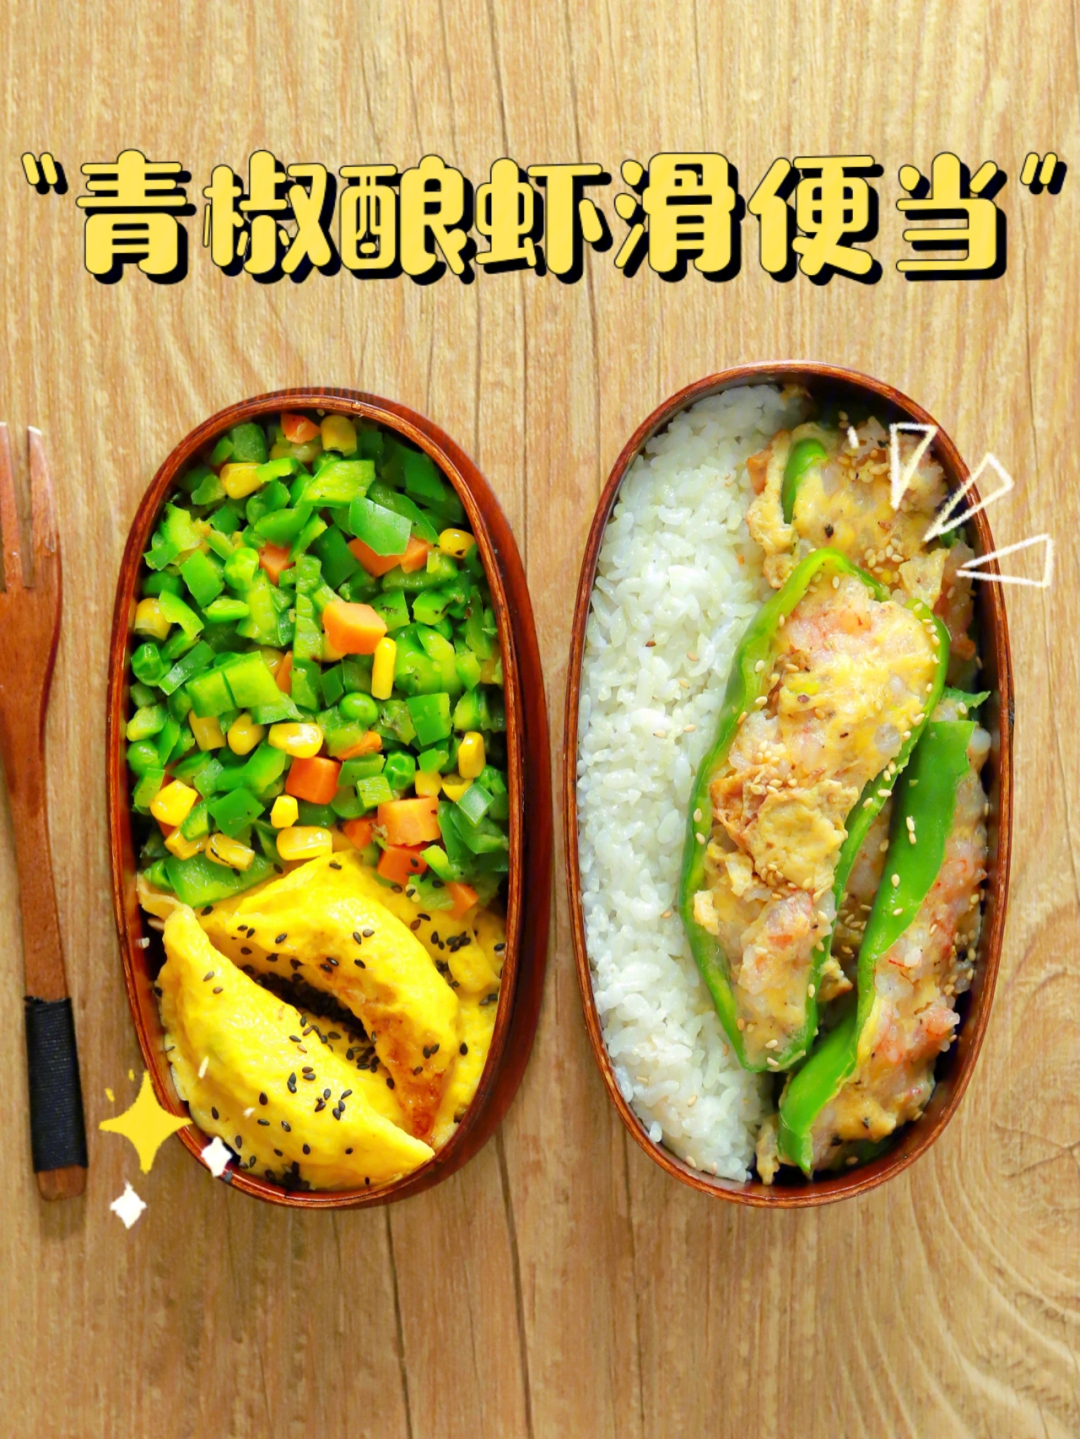 今日午餐青椒酿虾滑08蛋饺09蔬菜粒